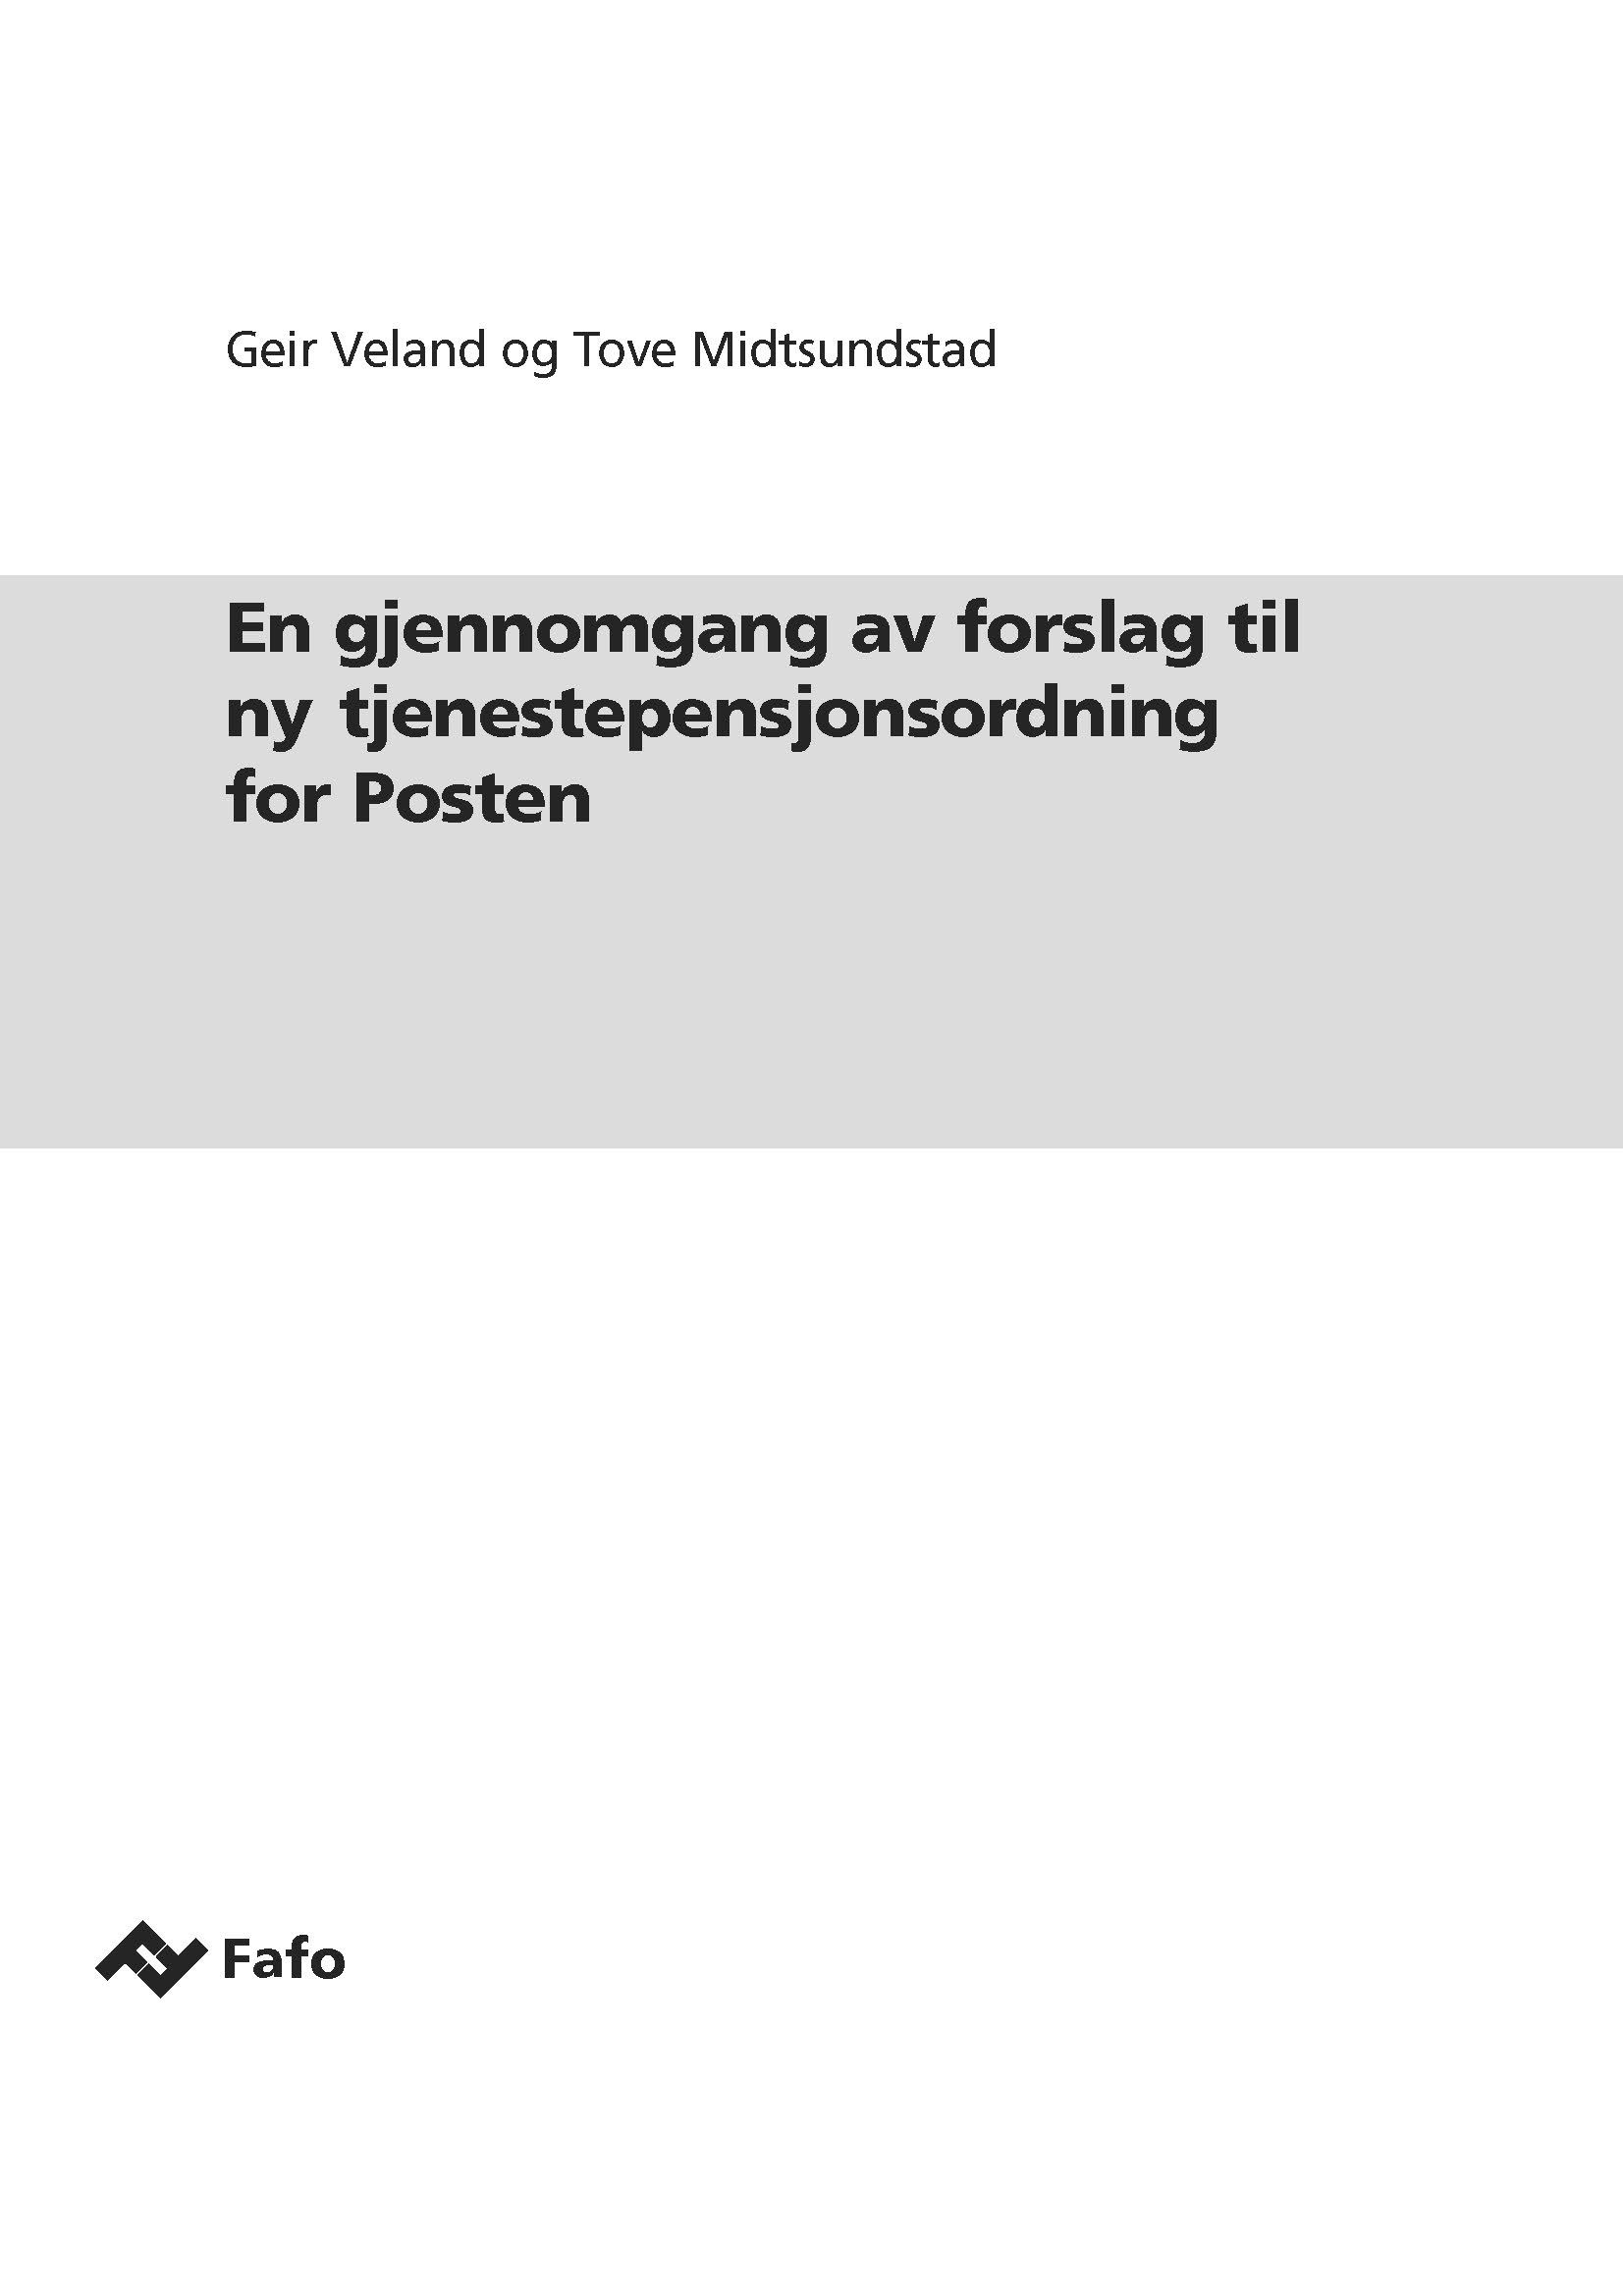 En gjennomgang av forslag til ny tjenestepensjonsordning for Posten